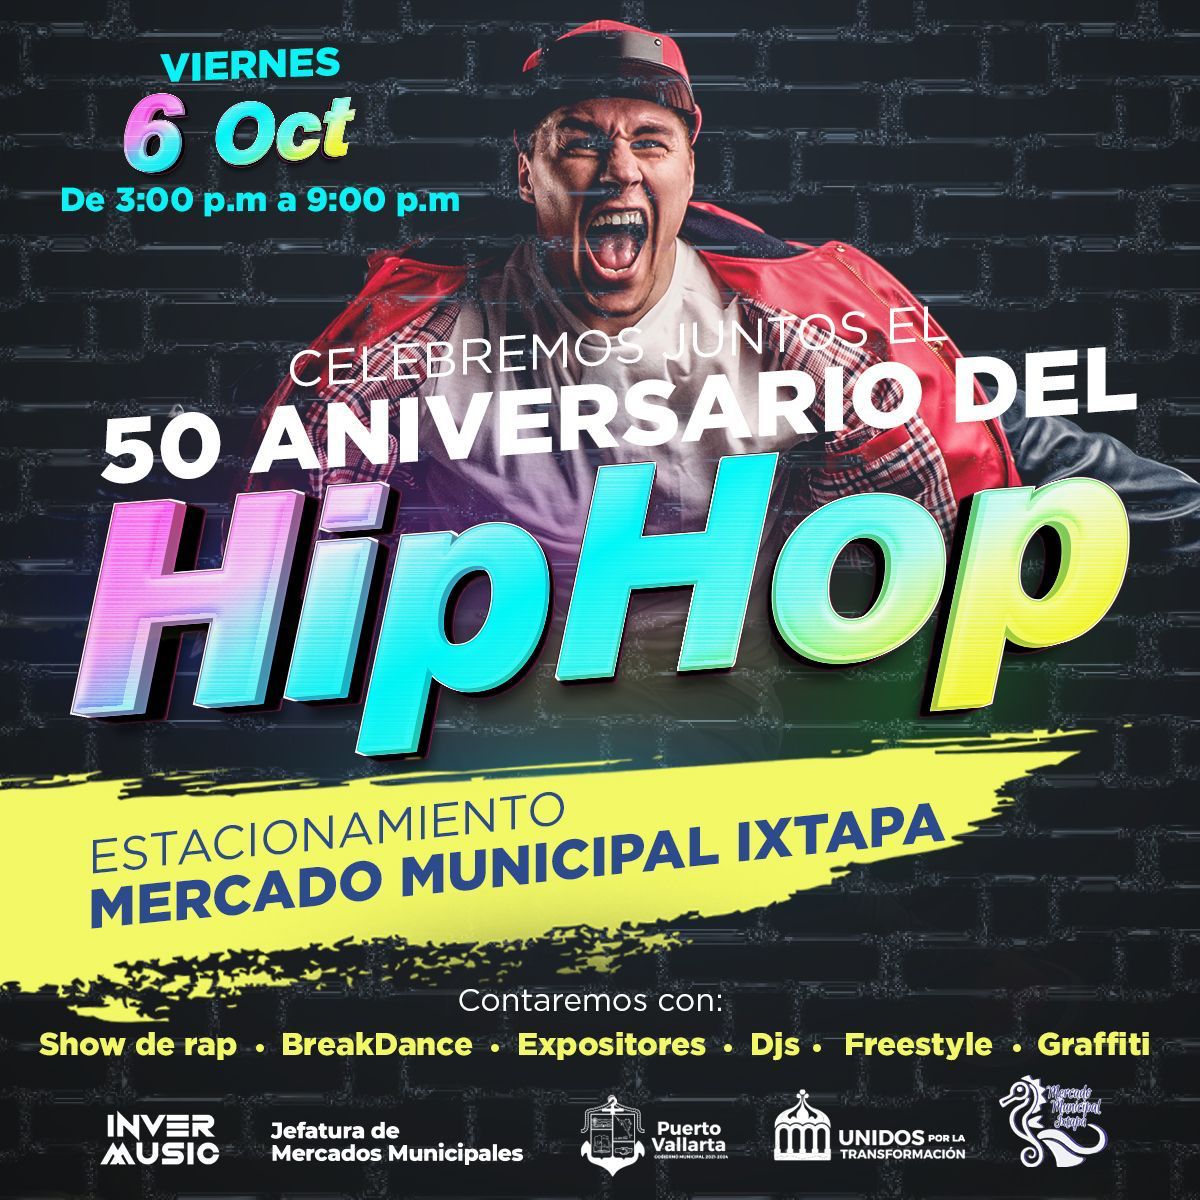 Invitan al festival por el 50 aniversario del Hip-Hop